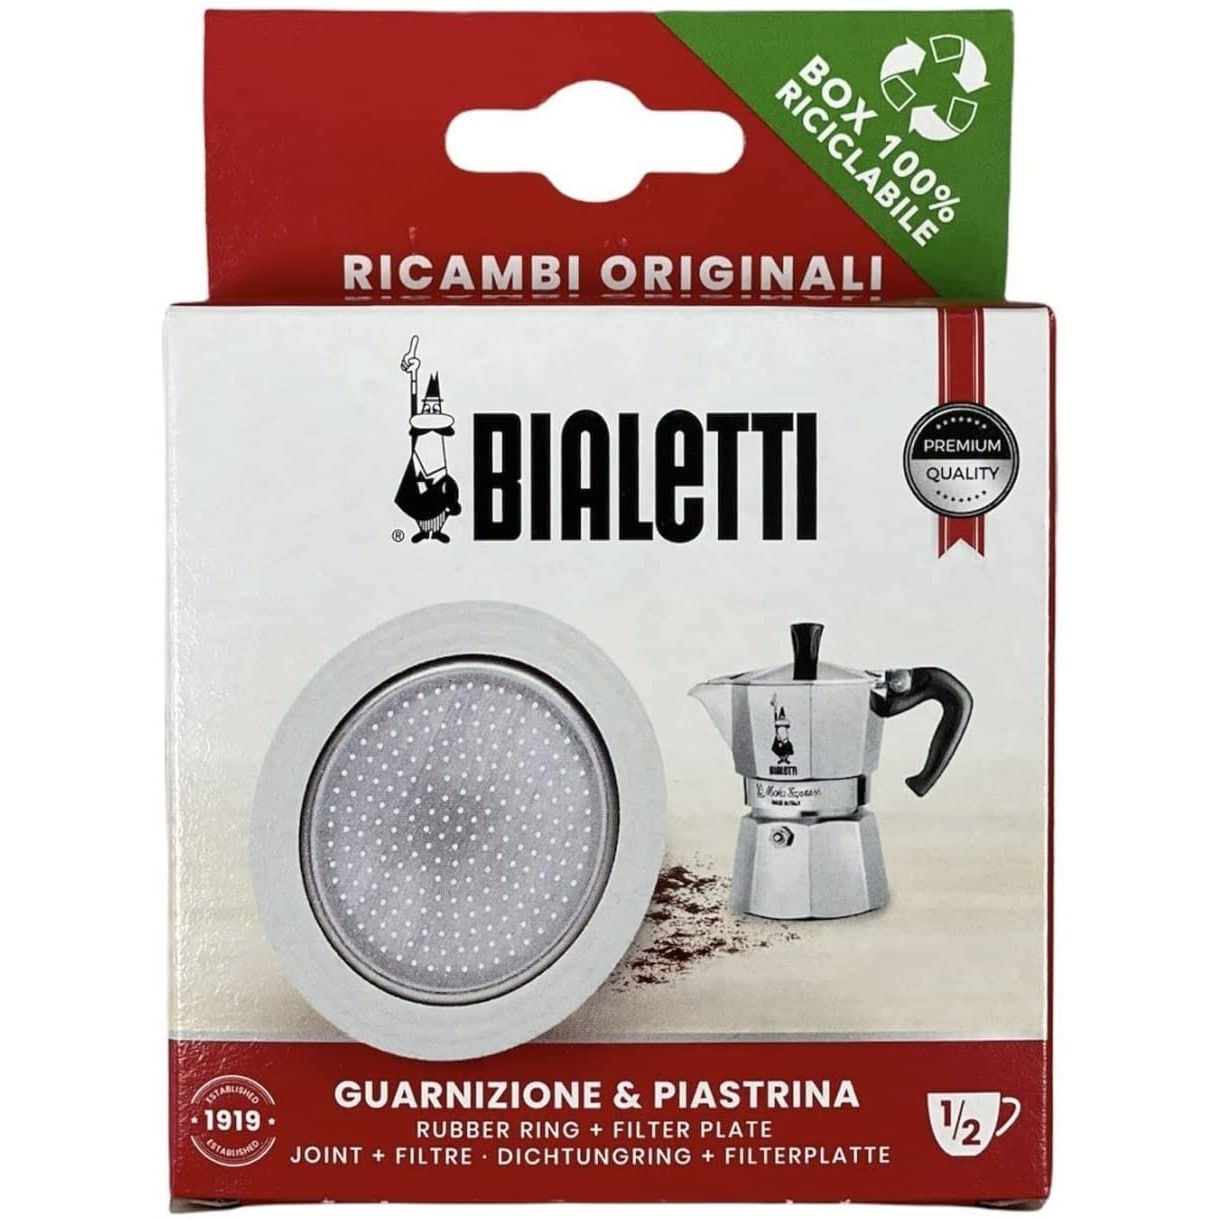 Bialetti Ricambi - Mezza tazza La Mokina confezione 1 Guarnizione + filtro  alluminio - Paggi Casalinghi